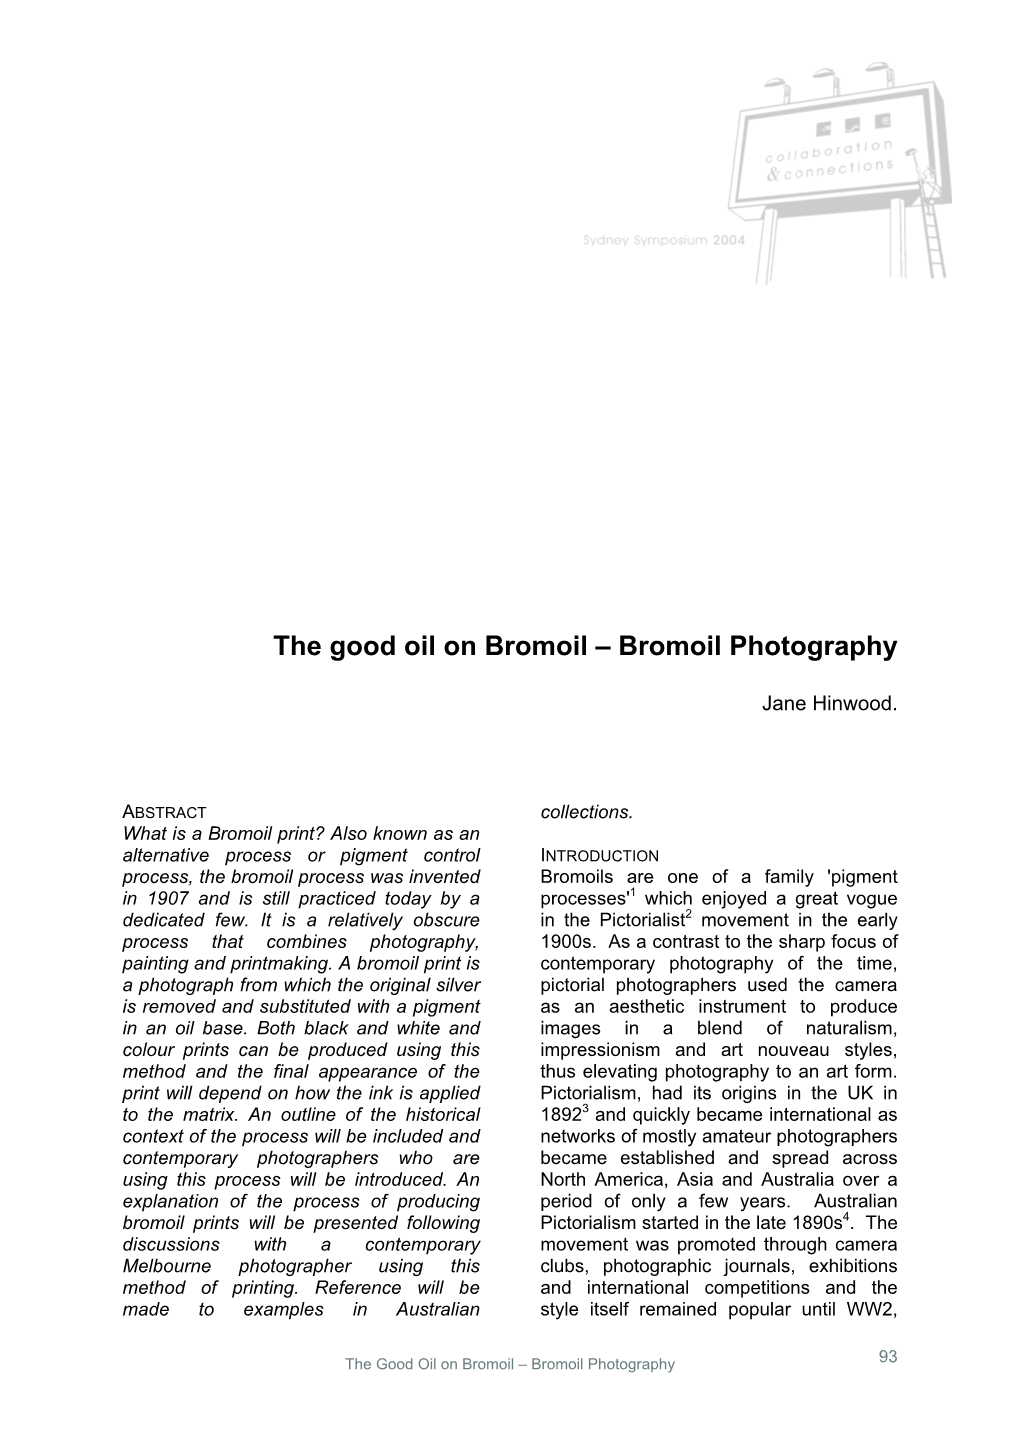 The Good Oil on Bromoil – Bromoil Photography